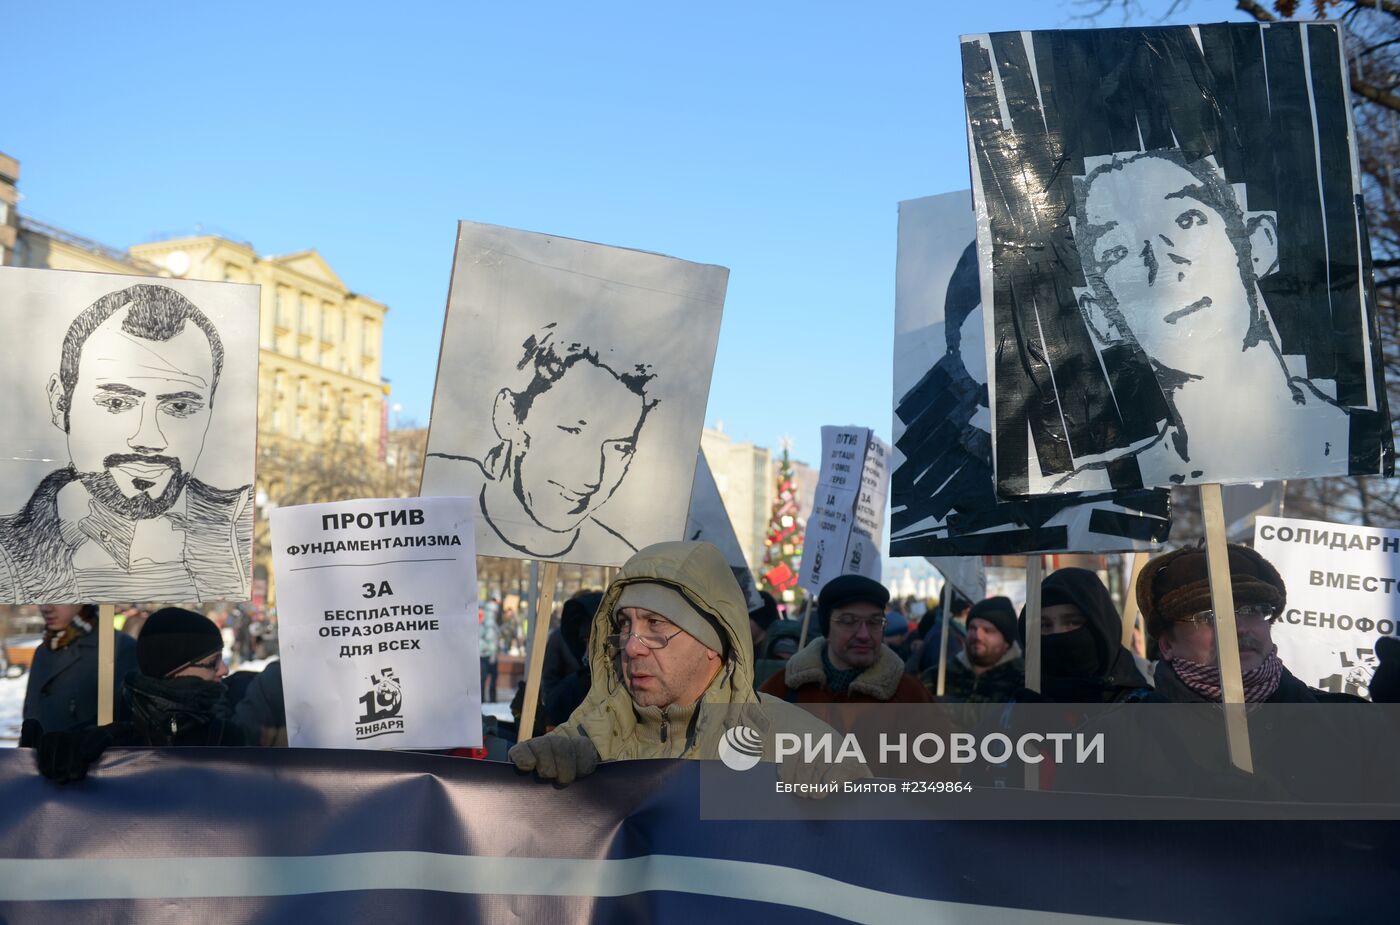 Шествие в память о Станиславе Маркелове и Анастасии Бабуровой